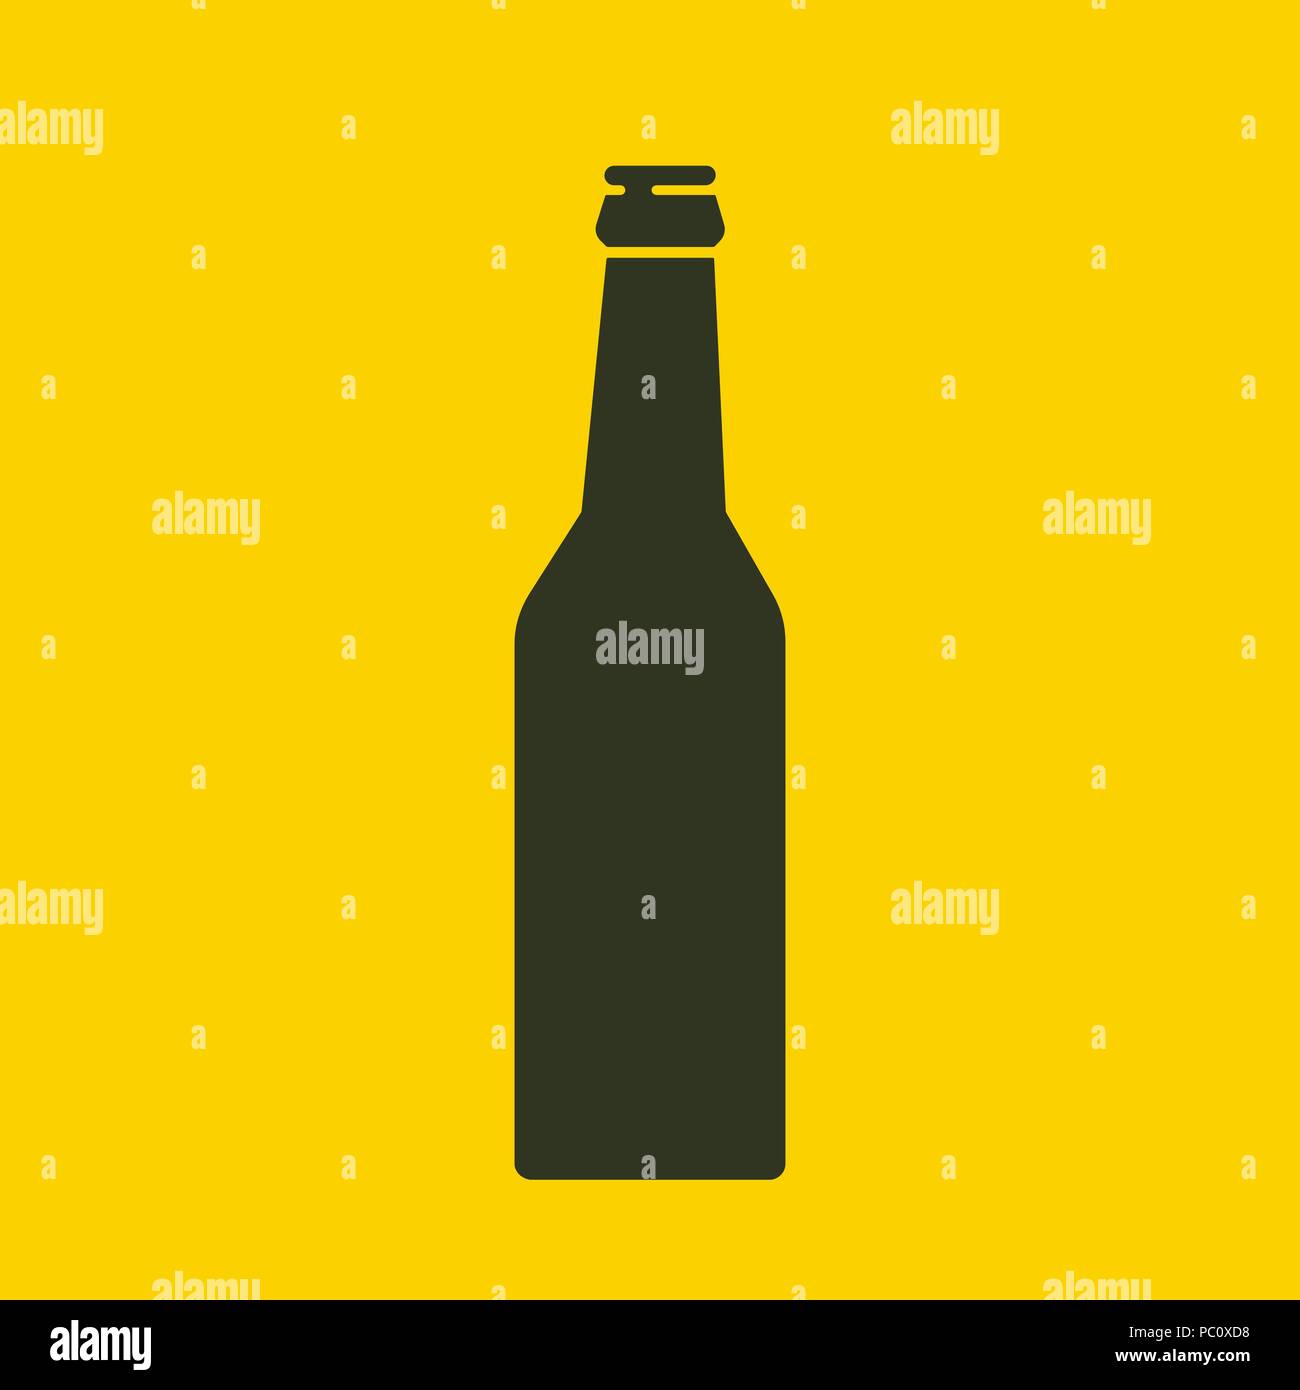 Bier Flasche Symbol. Mock up Glas Bier, Limonade saubere Flasche. Schwarz einfache Silhouette. Symbol Vorlage Logo. Isolierte Vector Illustration. Stock Vektor